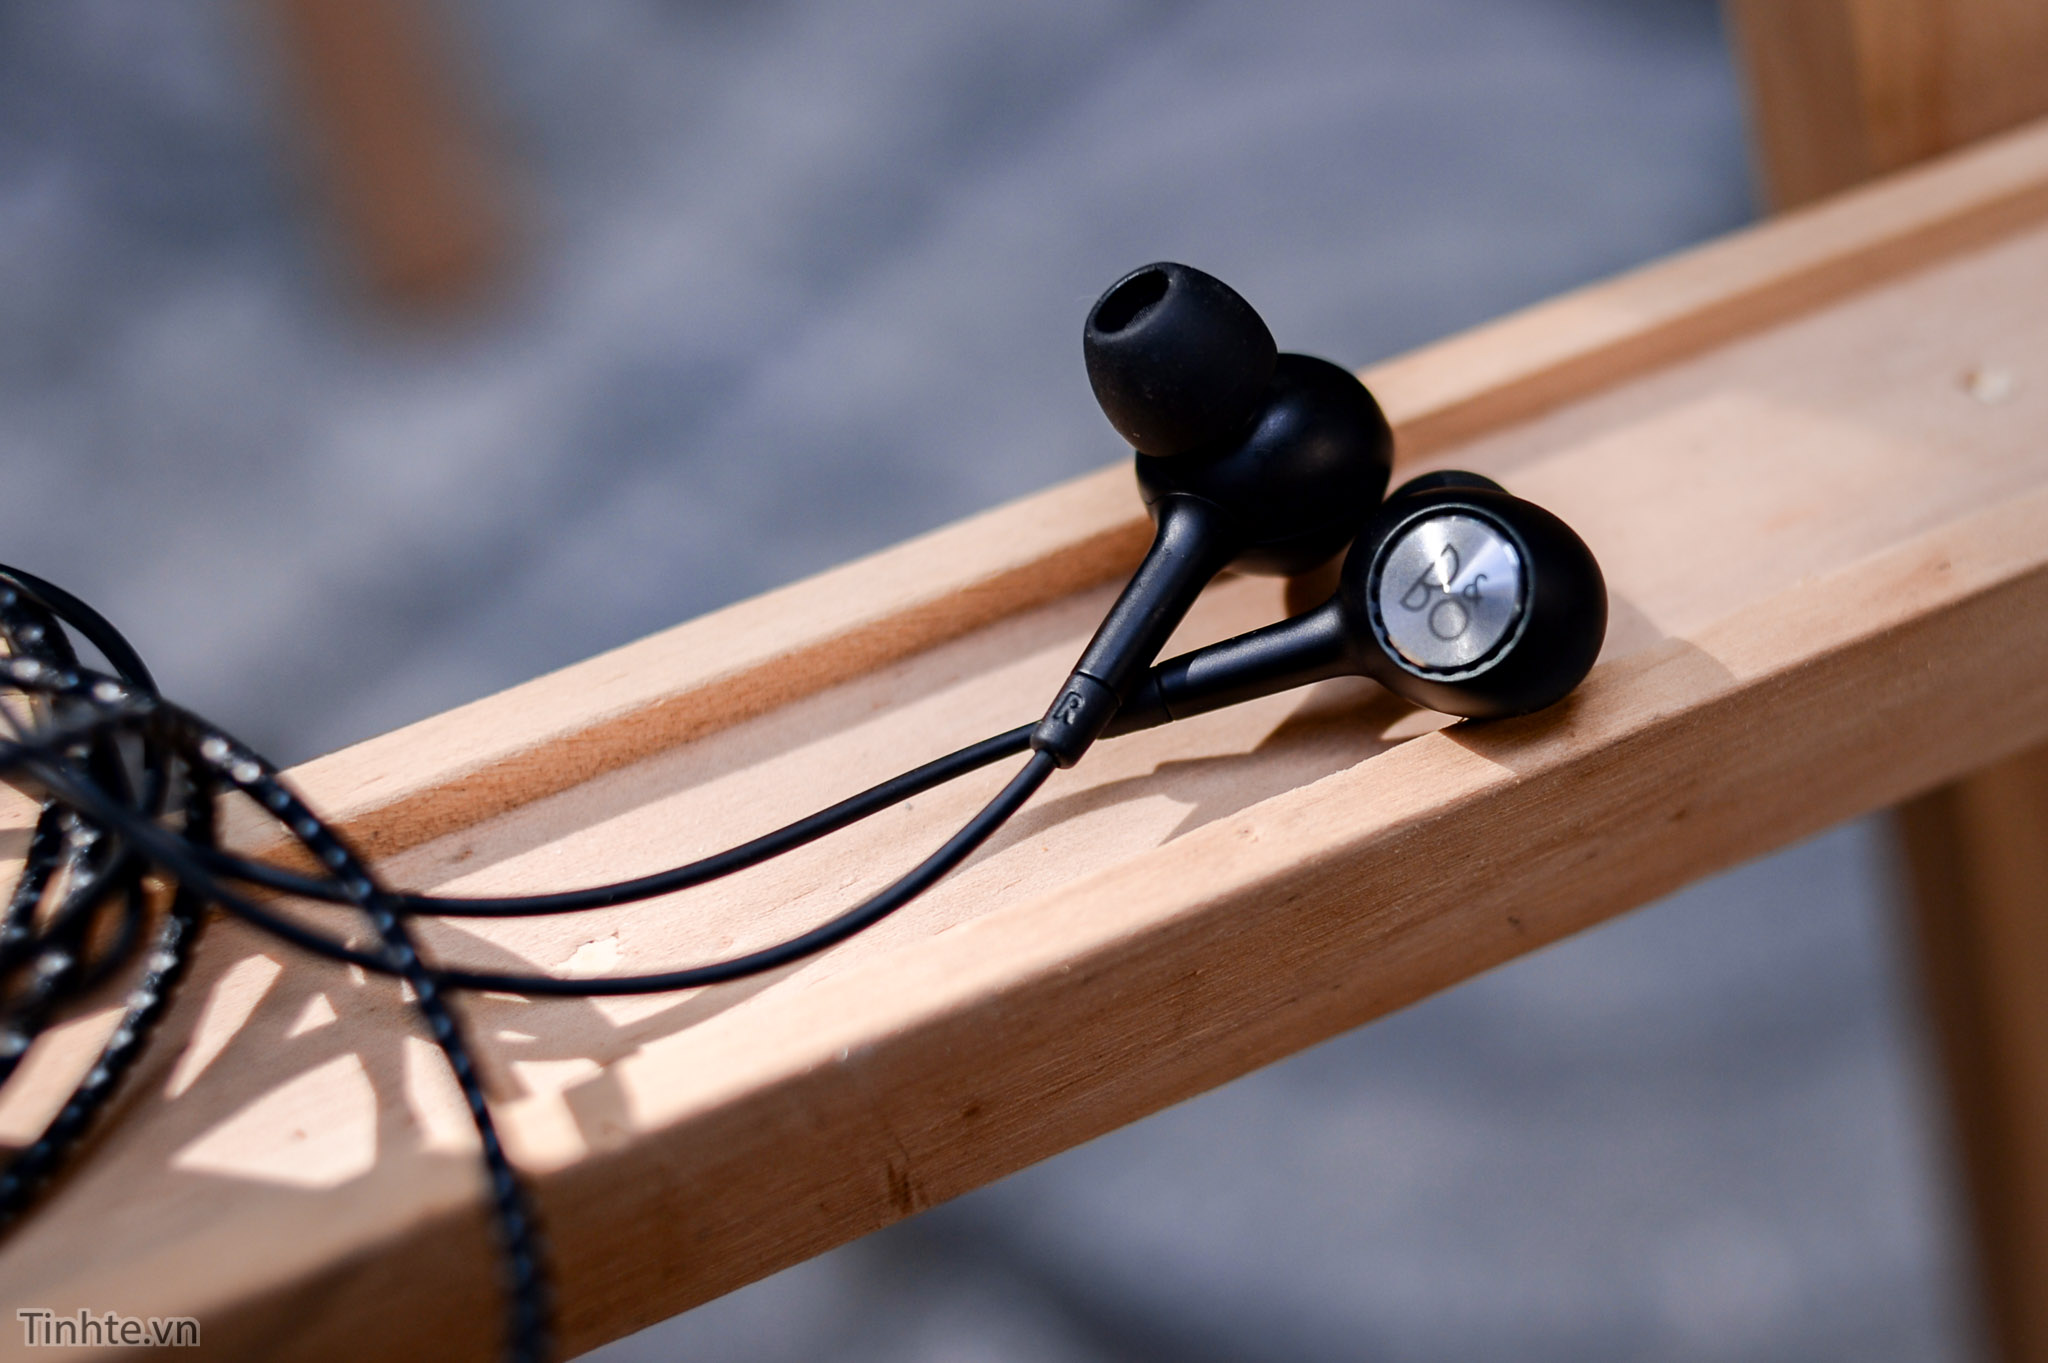 Lại nói về tai nghe B&O kèm theo LG V20: chiếc tai nghe dành cho những người không muốn mua tai nghe